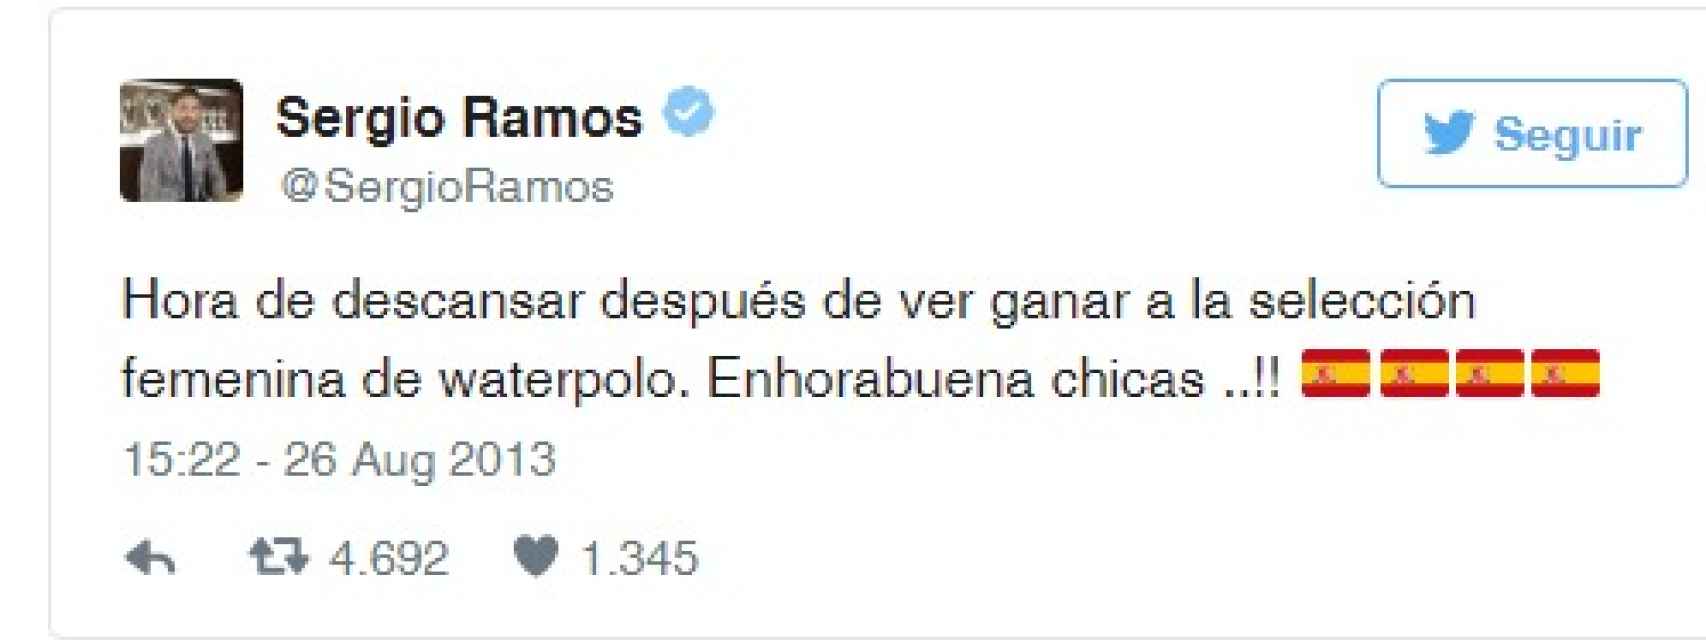 El tuit con el que Sergio Ramos felicitó a la Selección Femenina de Waterpolo.